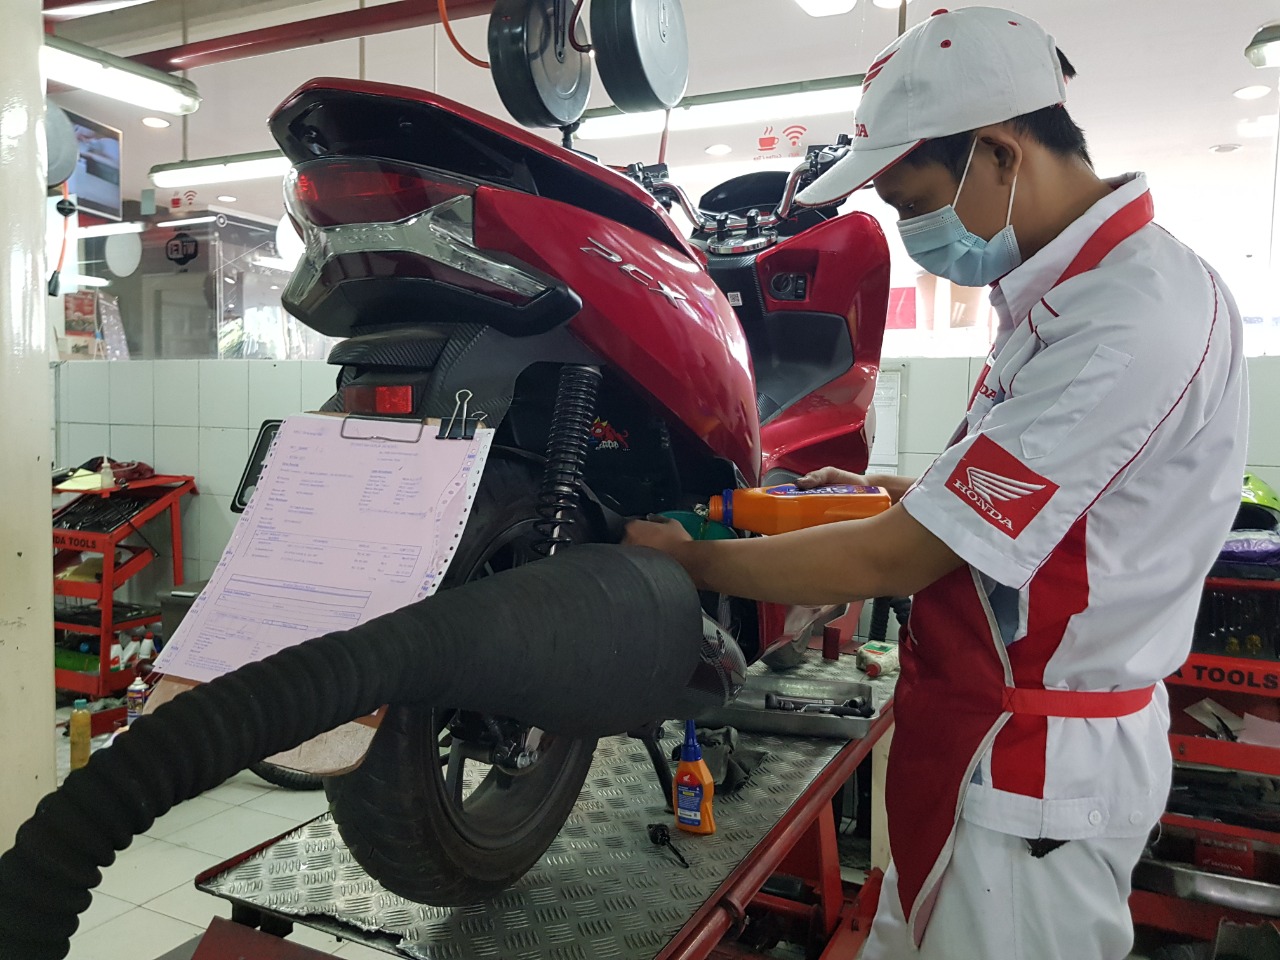 Program Baru MPM Honda Jatim, “Cek Aja Dulu ke AHASS” Secara Gratis!